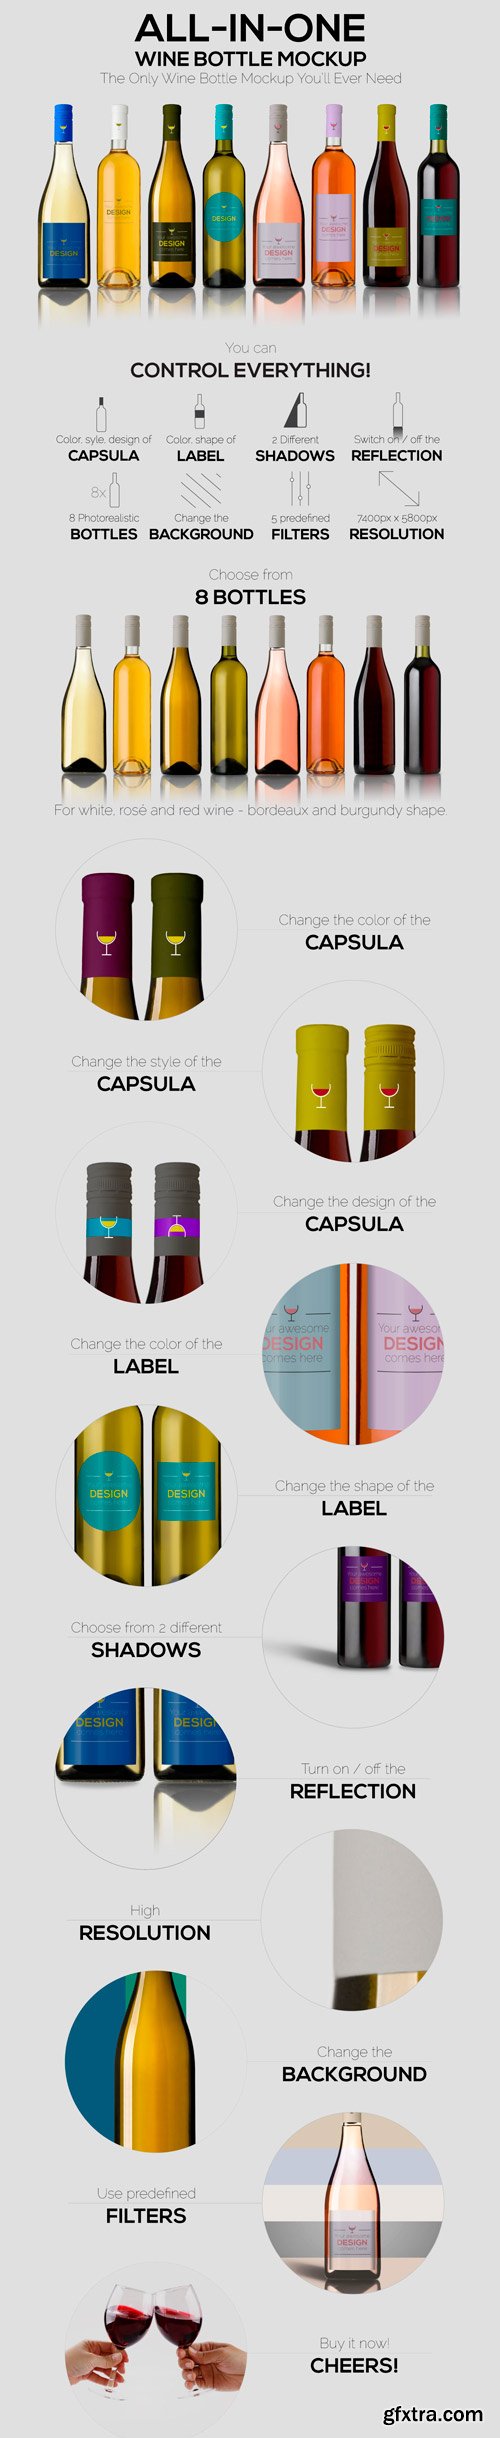 CM 744090 - All-In-One Wine Bottle Mockup